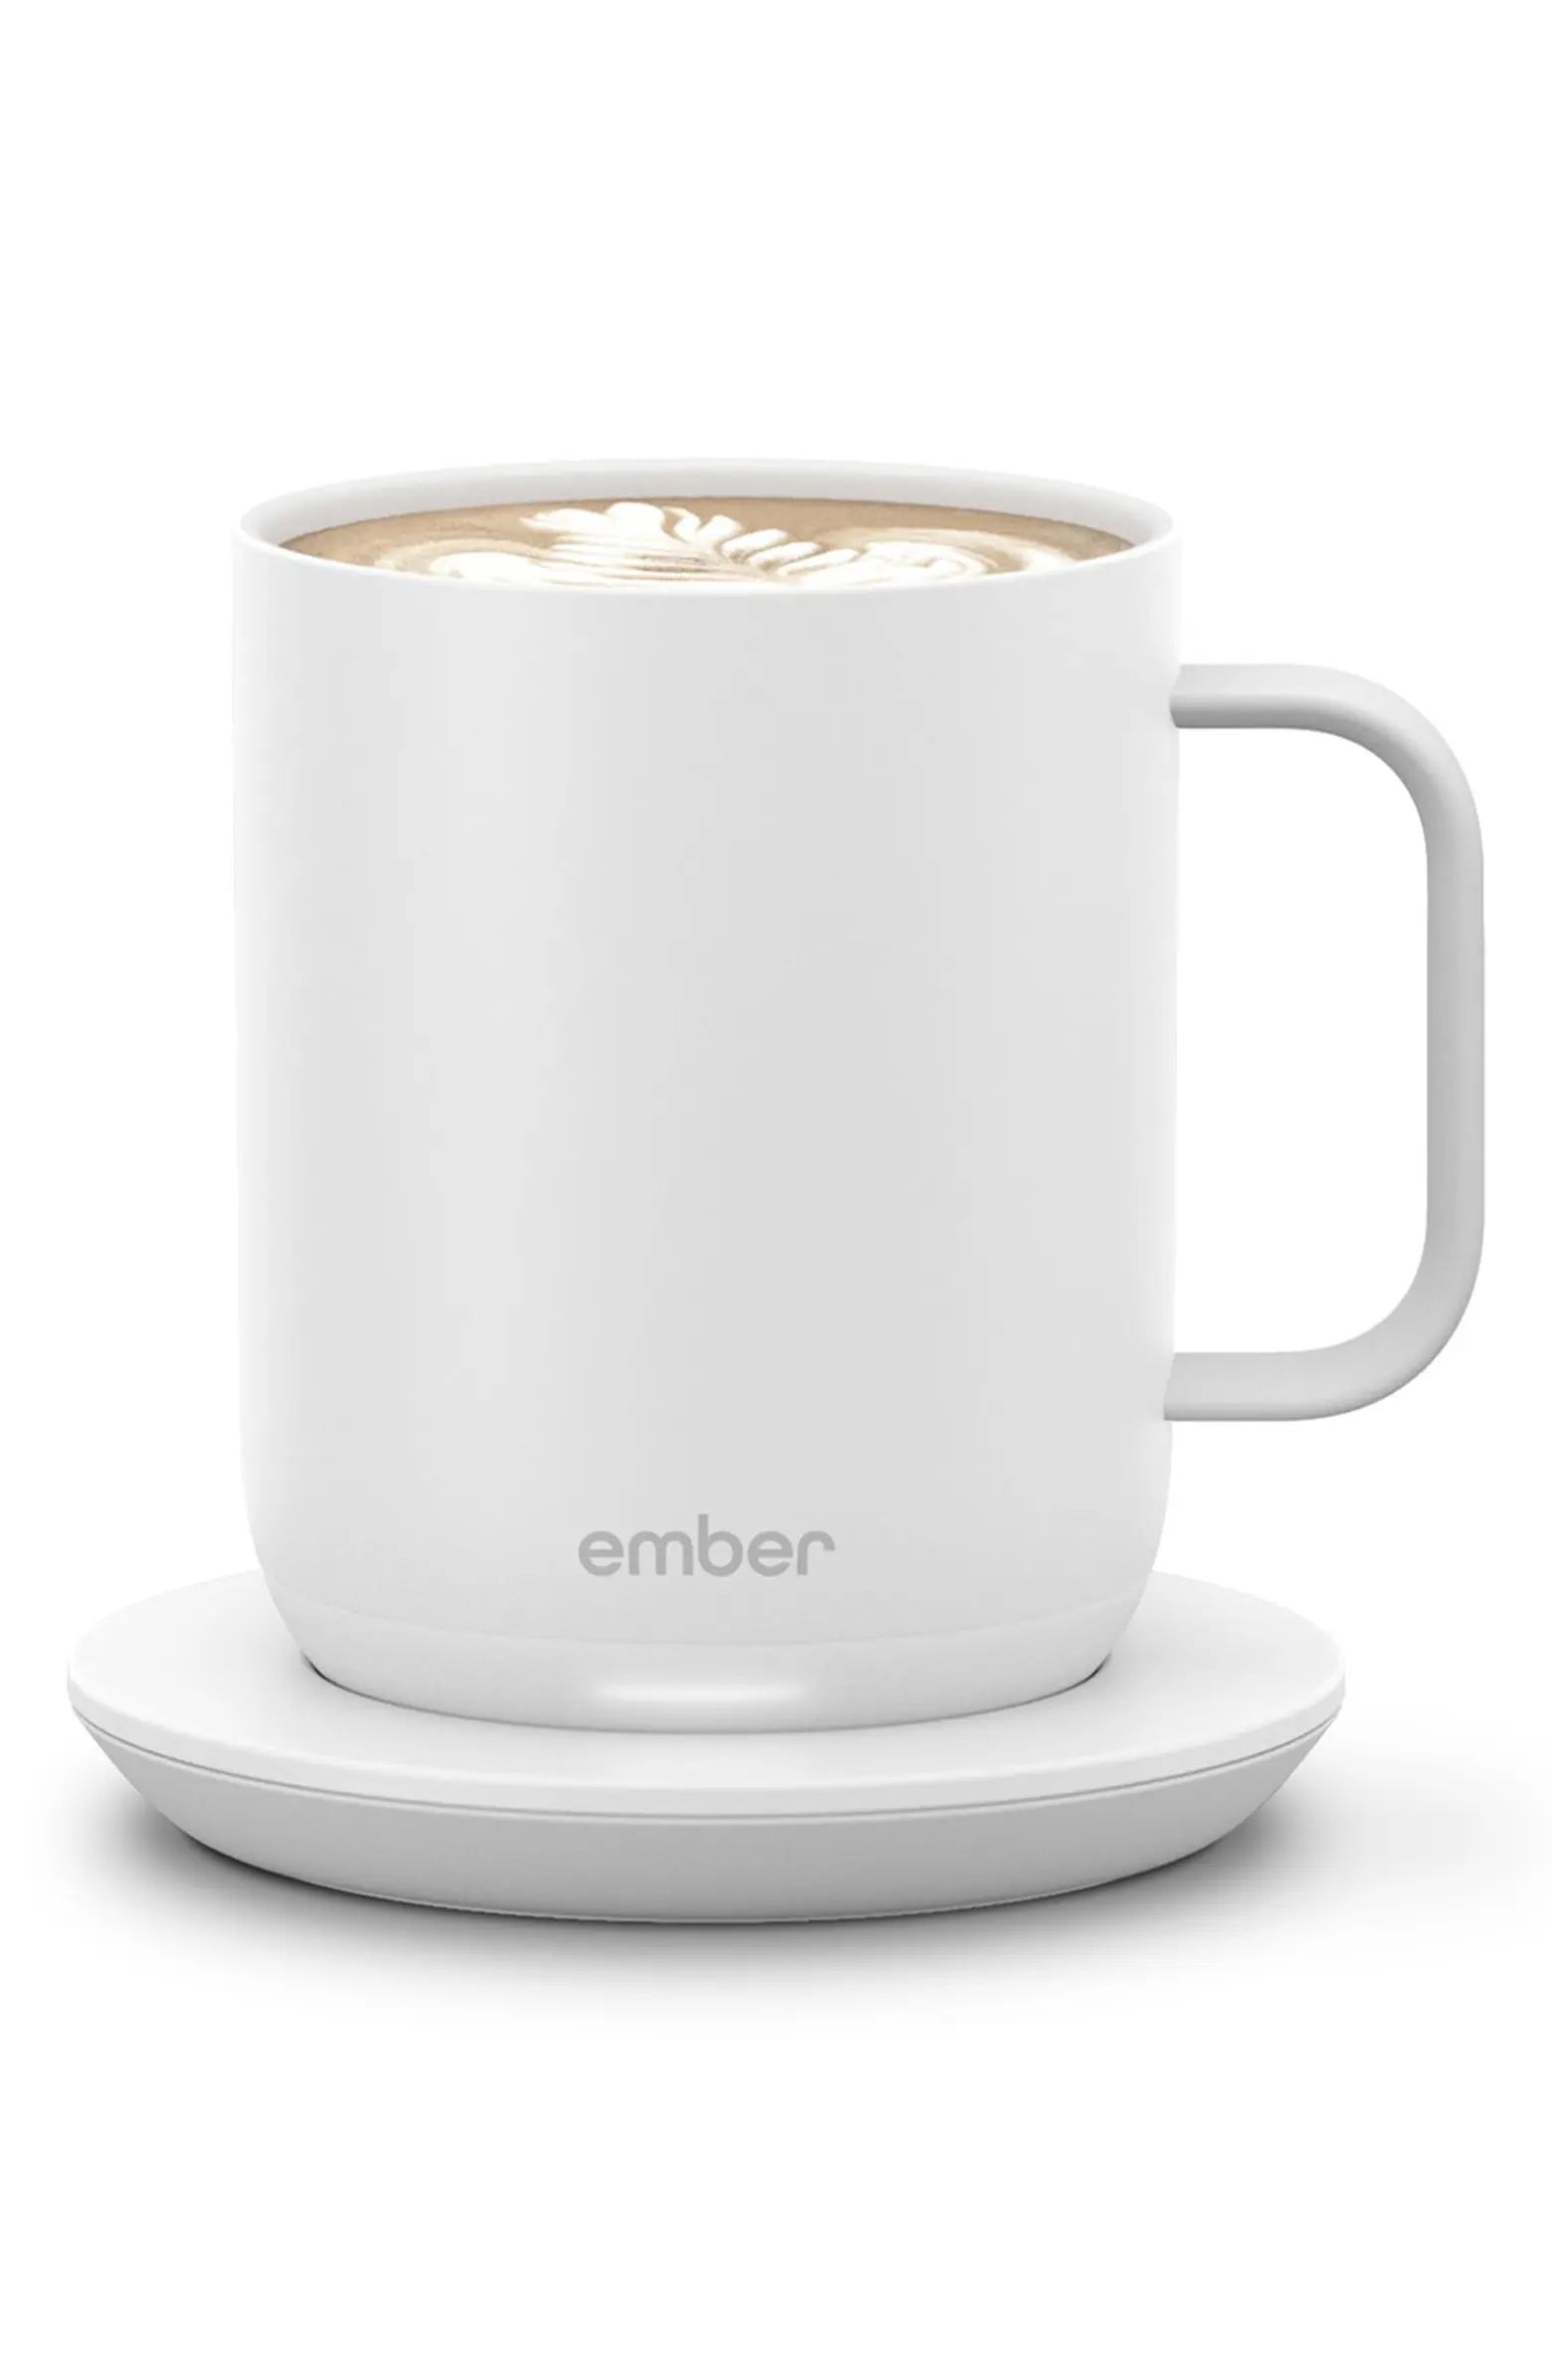 EMBER Smart Mug 2 | Nordstrom | Nordstrom